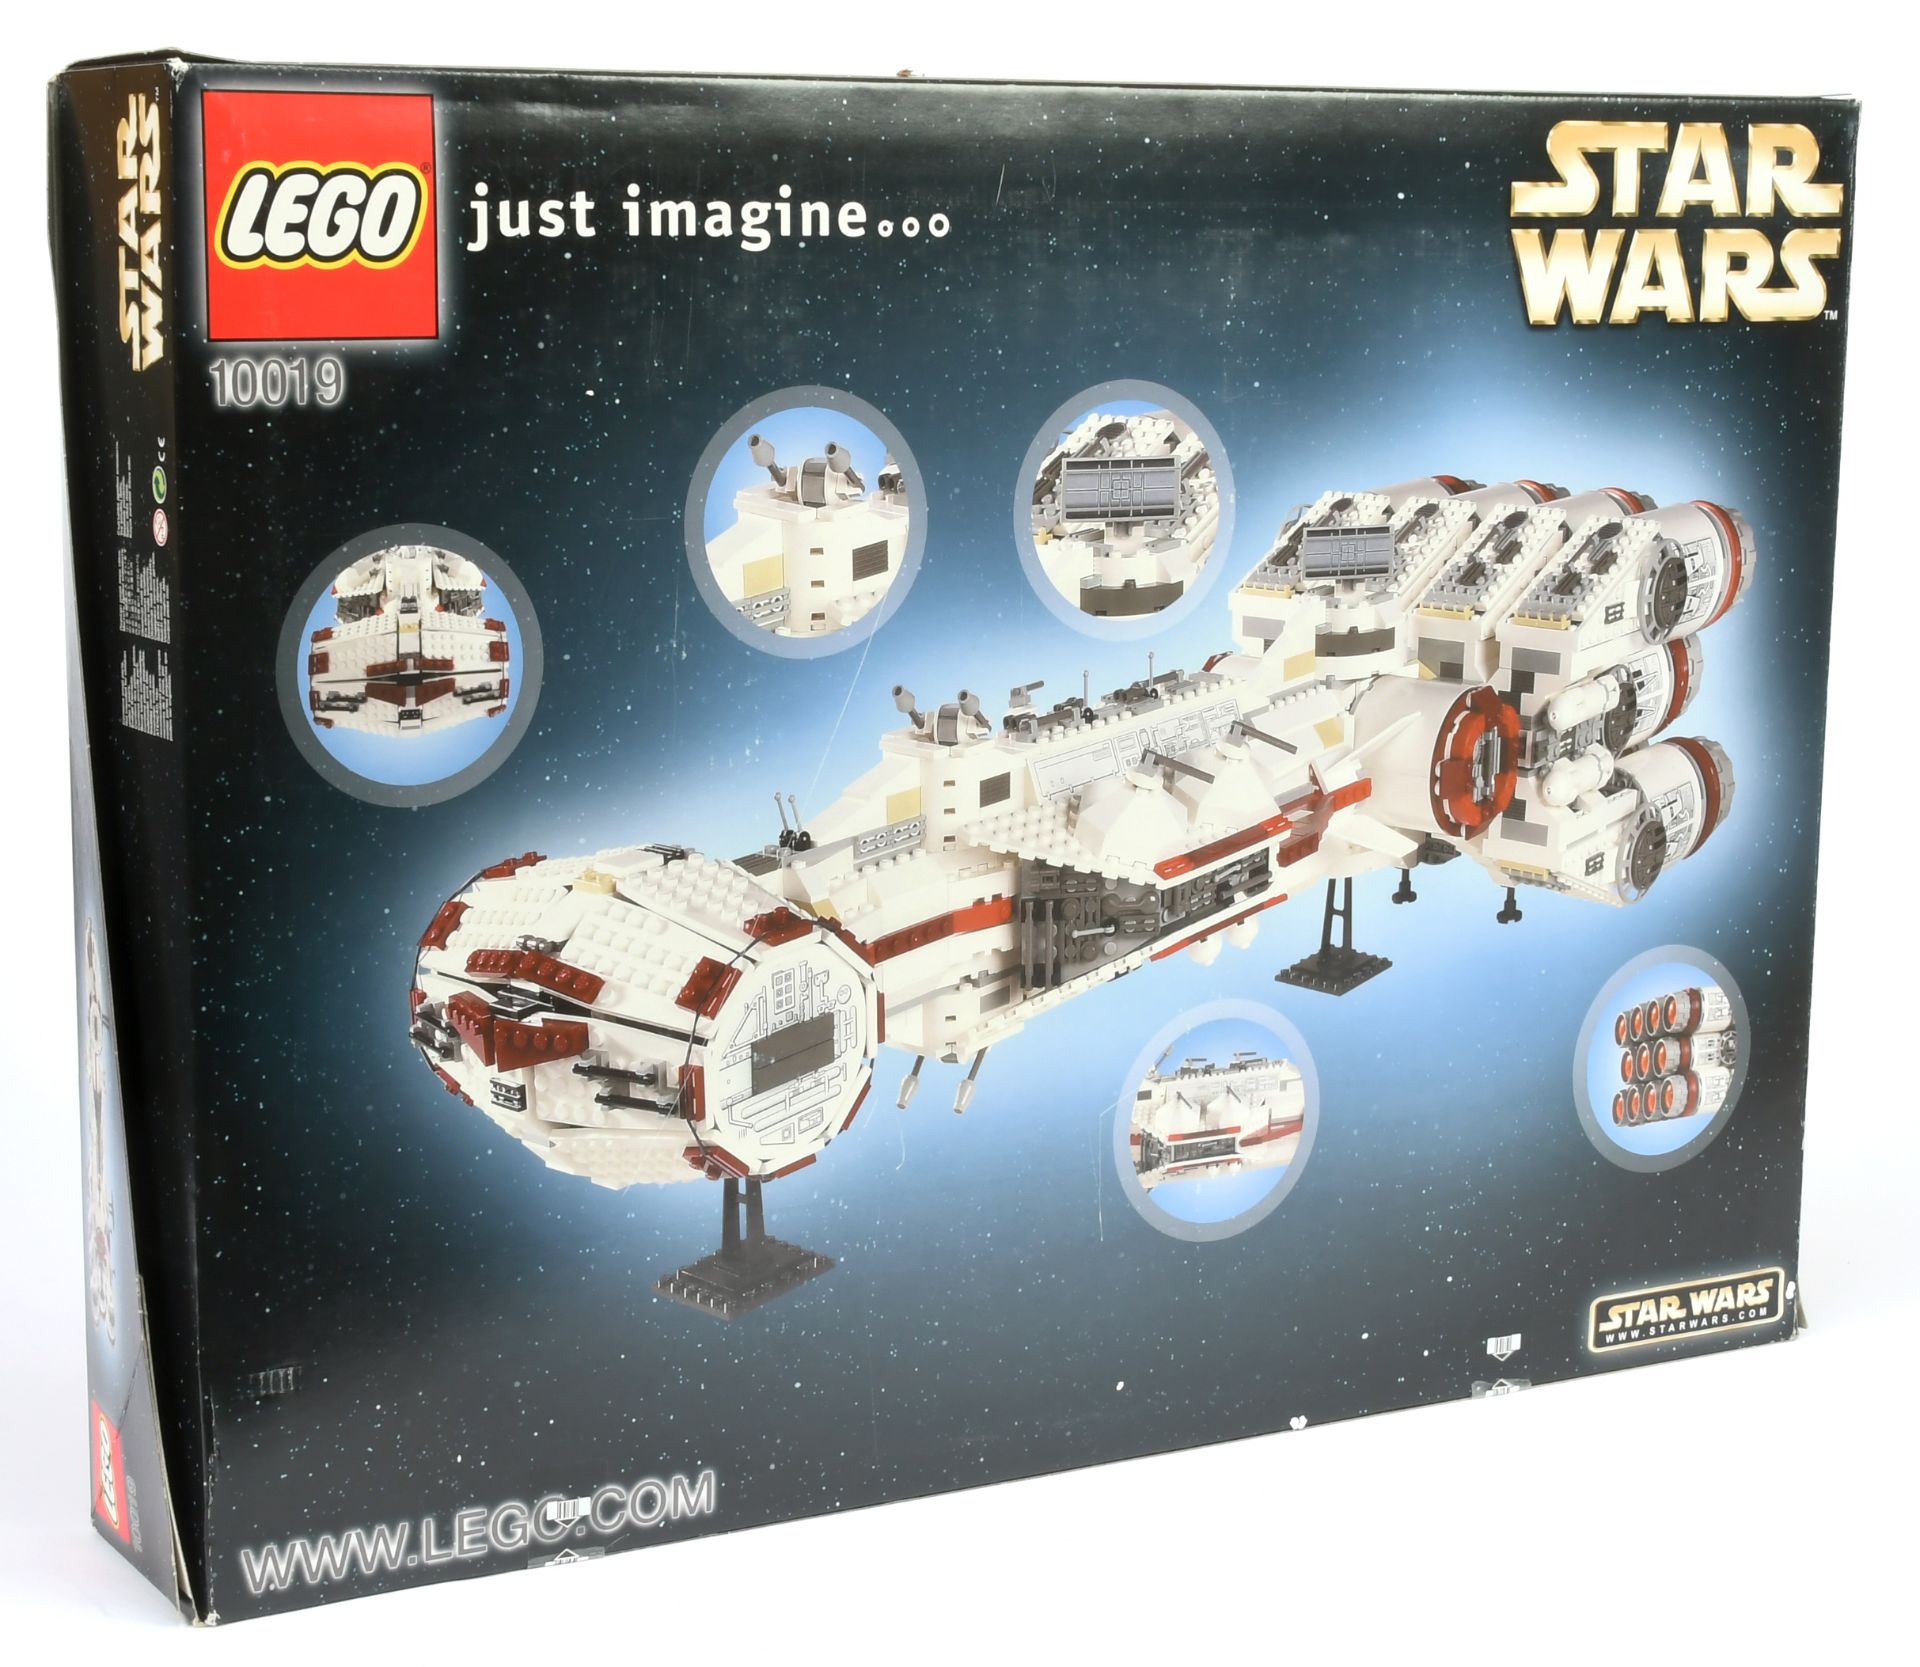 Lego Star Wars 10019 Rebel Blockade Runner - Tantive IV - 2001/2002 Issue, within Excellent seale... - Bild 2 aus 2